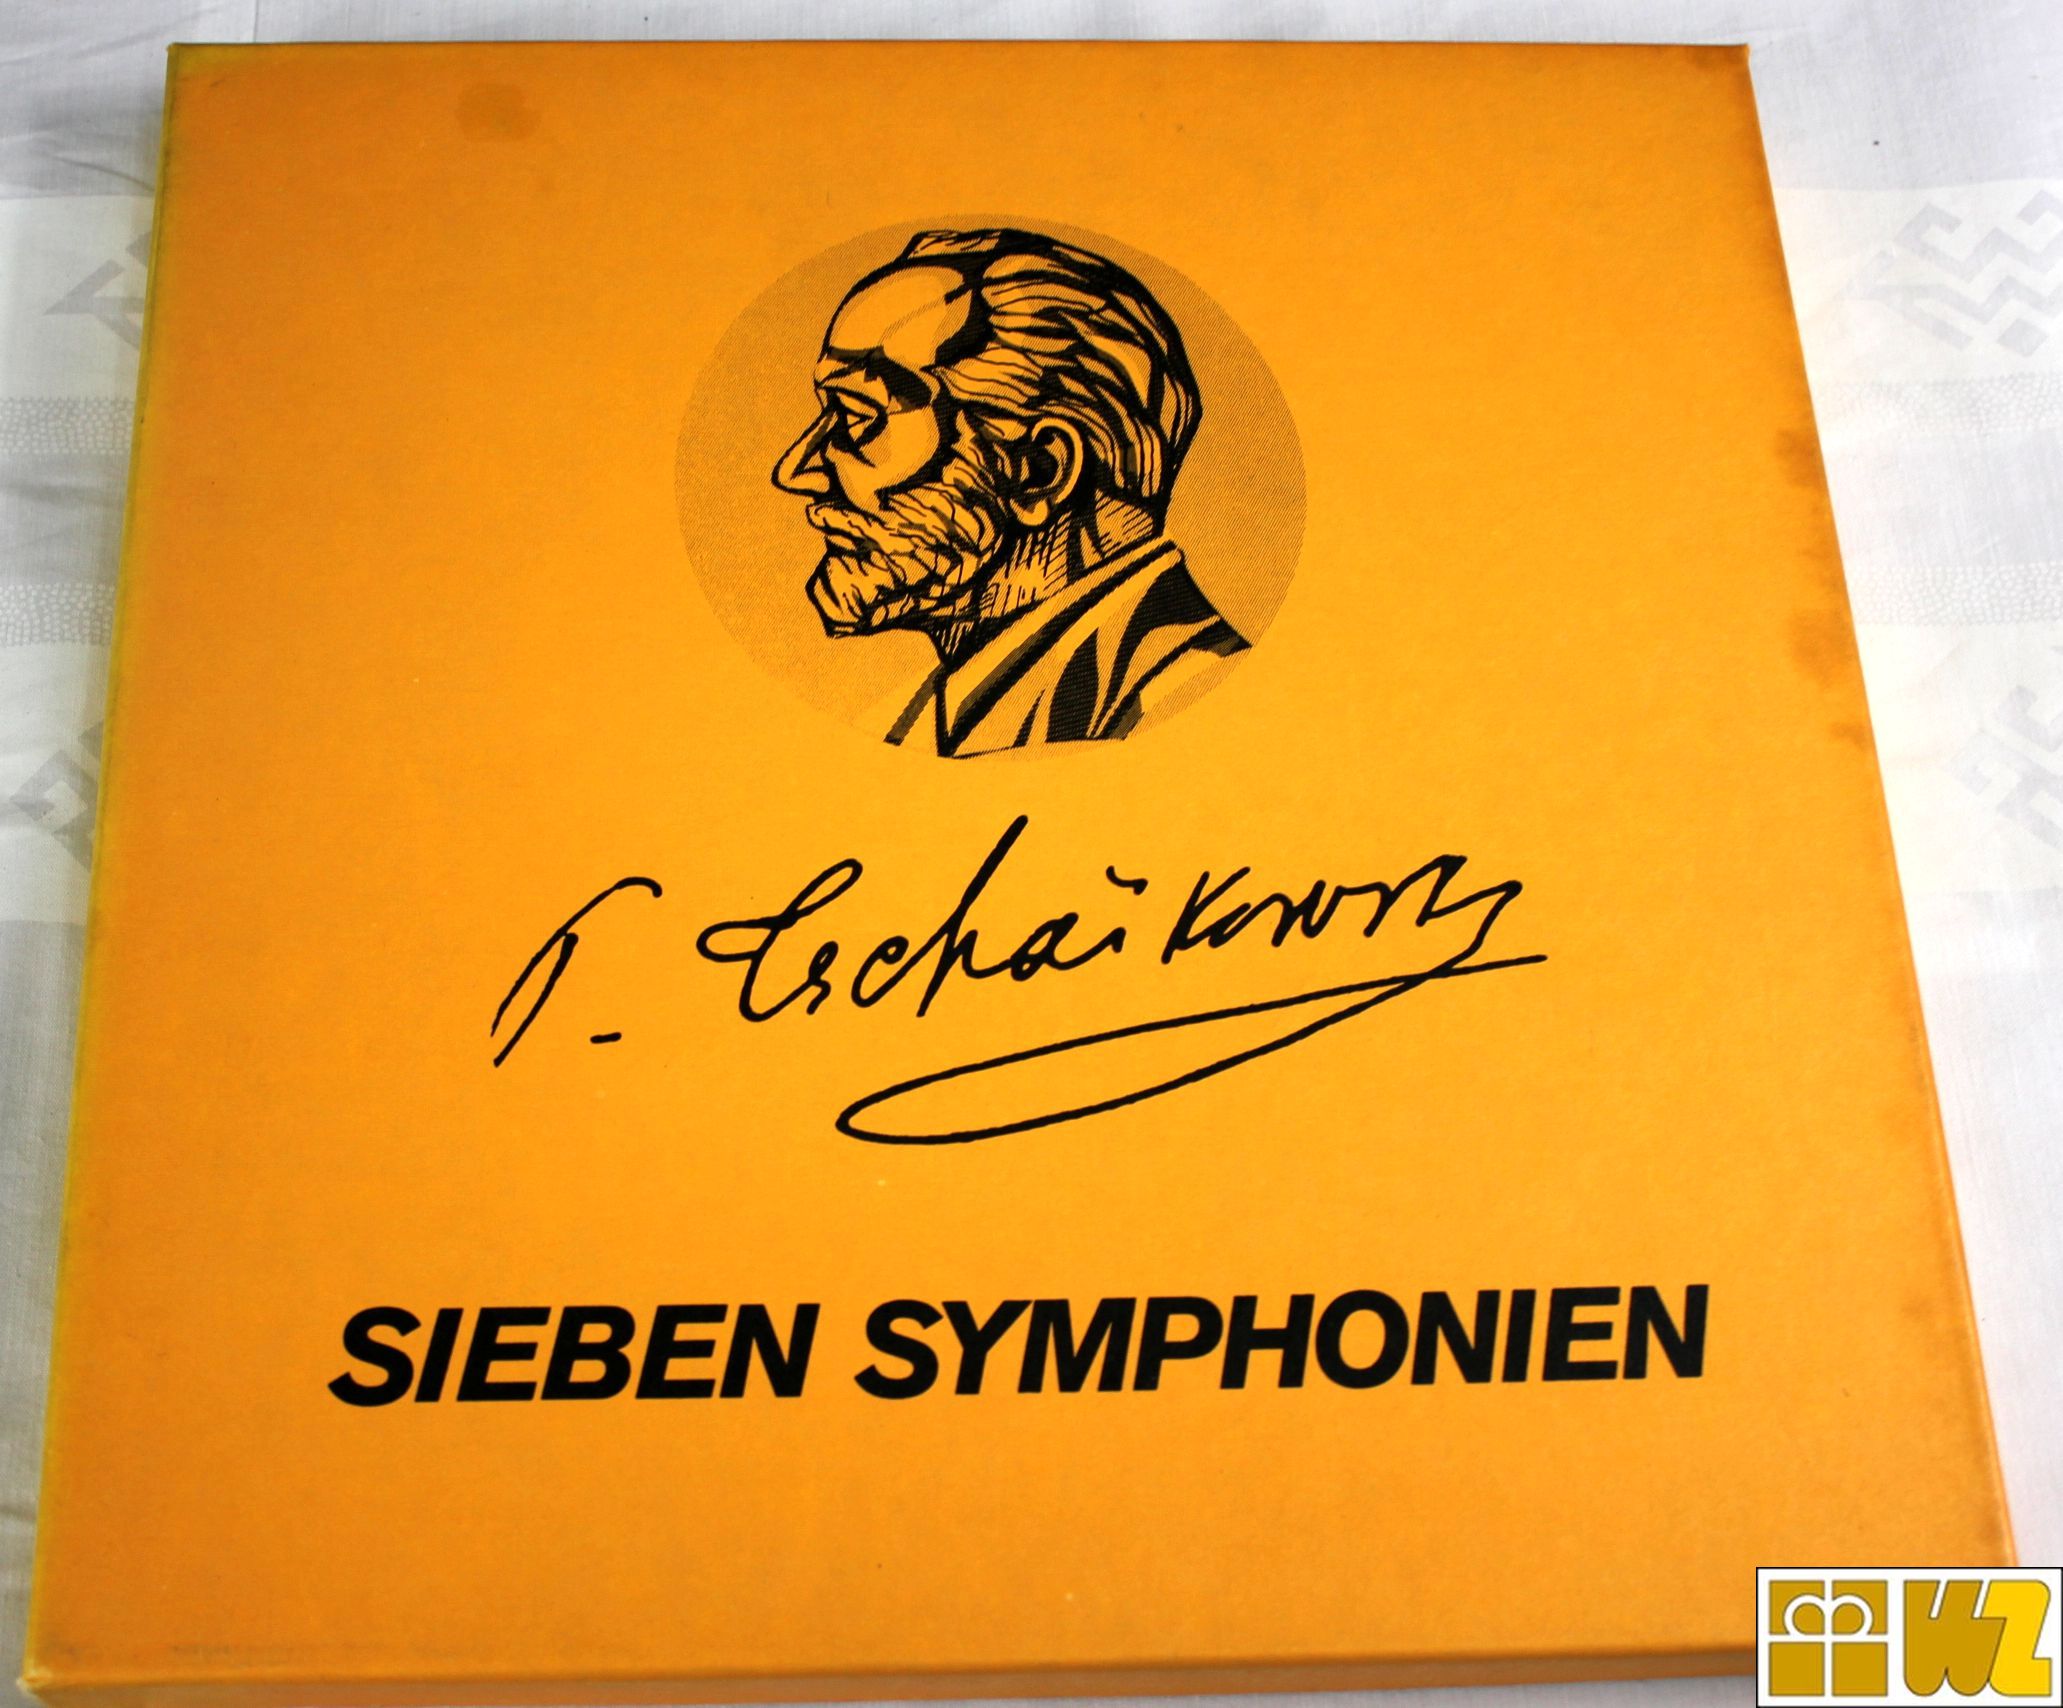 Peter Tschaikowsky Sieben Symphonien KAT 76.002, 7 LPs, Artiphon, gebraucht